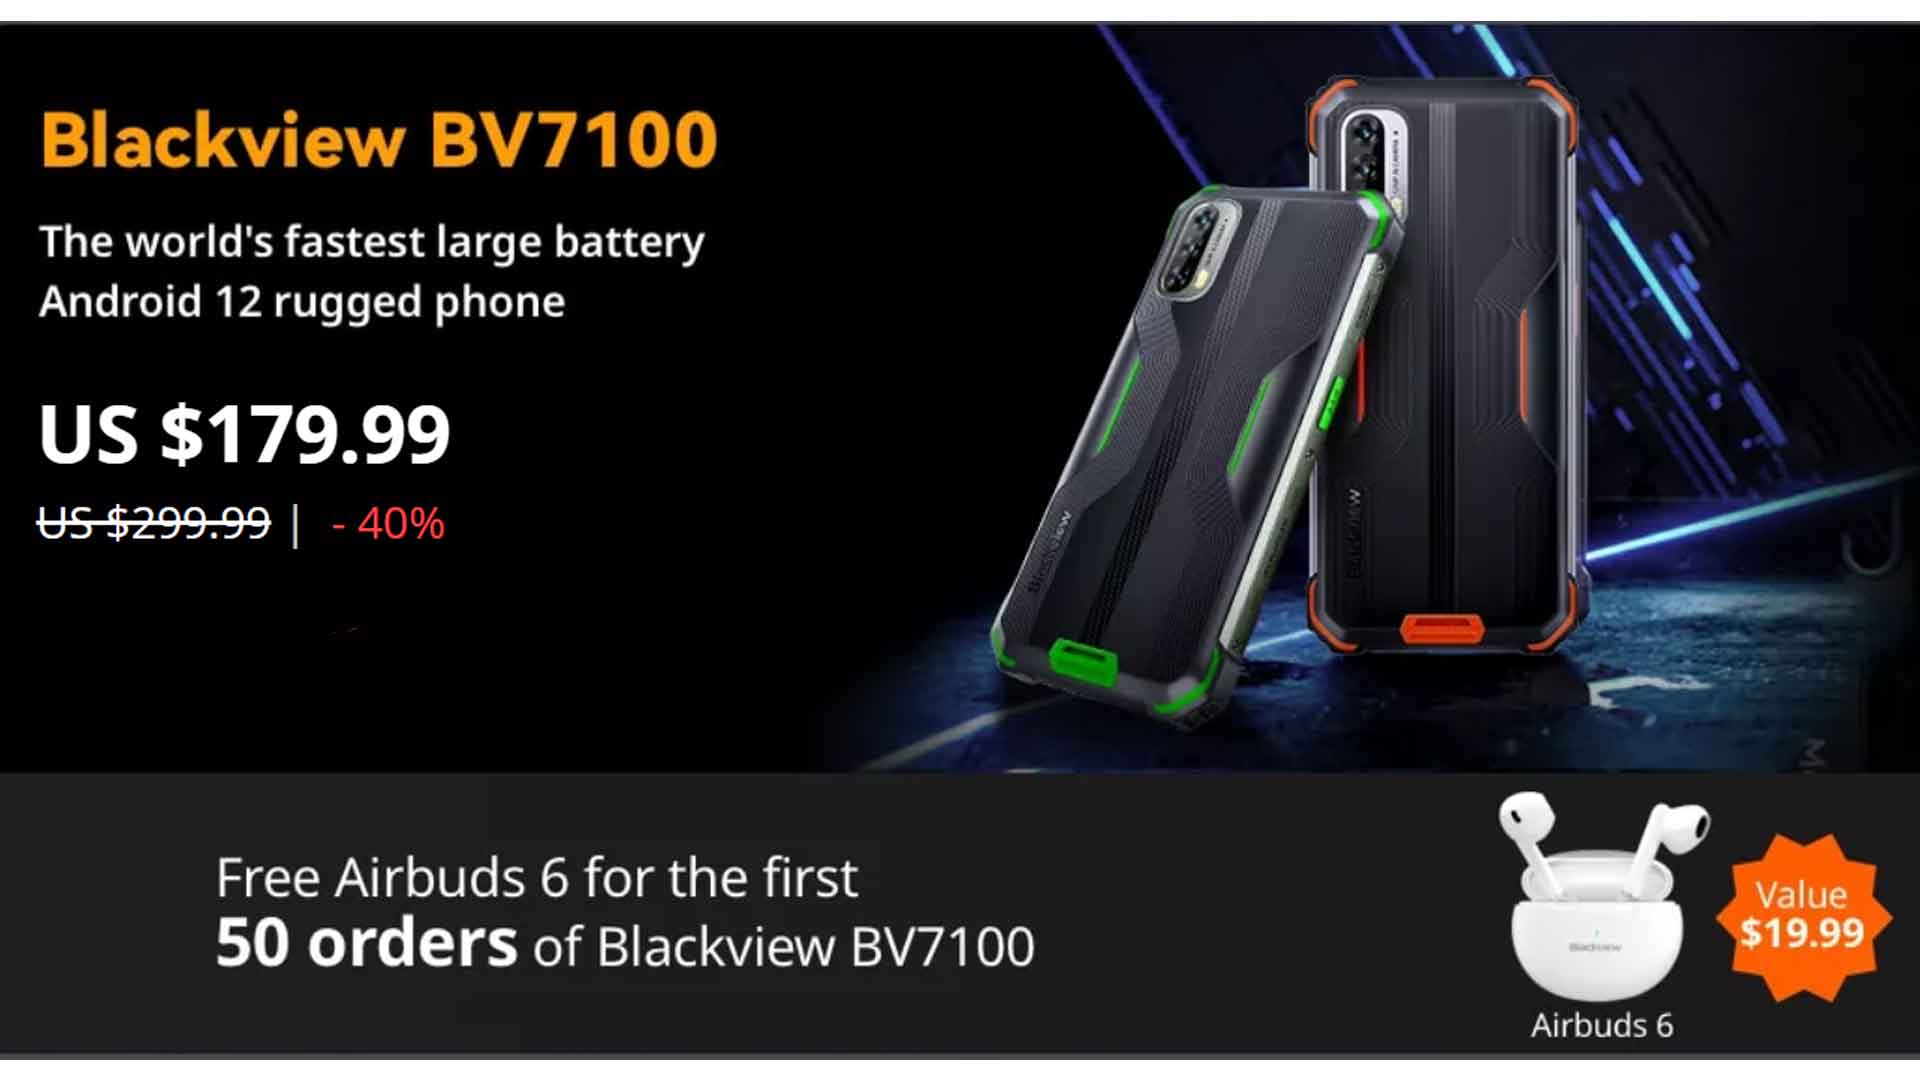 Blackview BV7100 Blackview BV7100 price Blackview Blackview BL8800 Pro Blackview BV6100 Blackview phone rugged phone